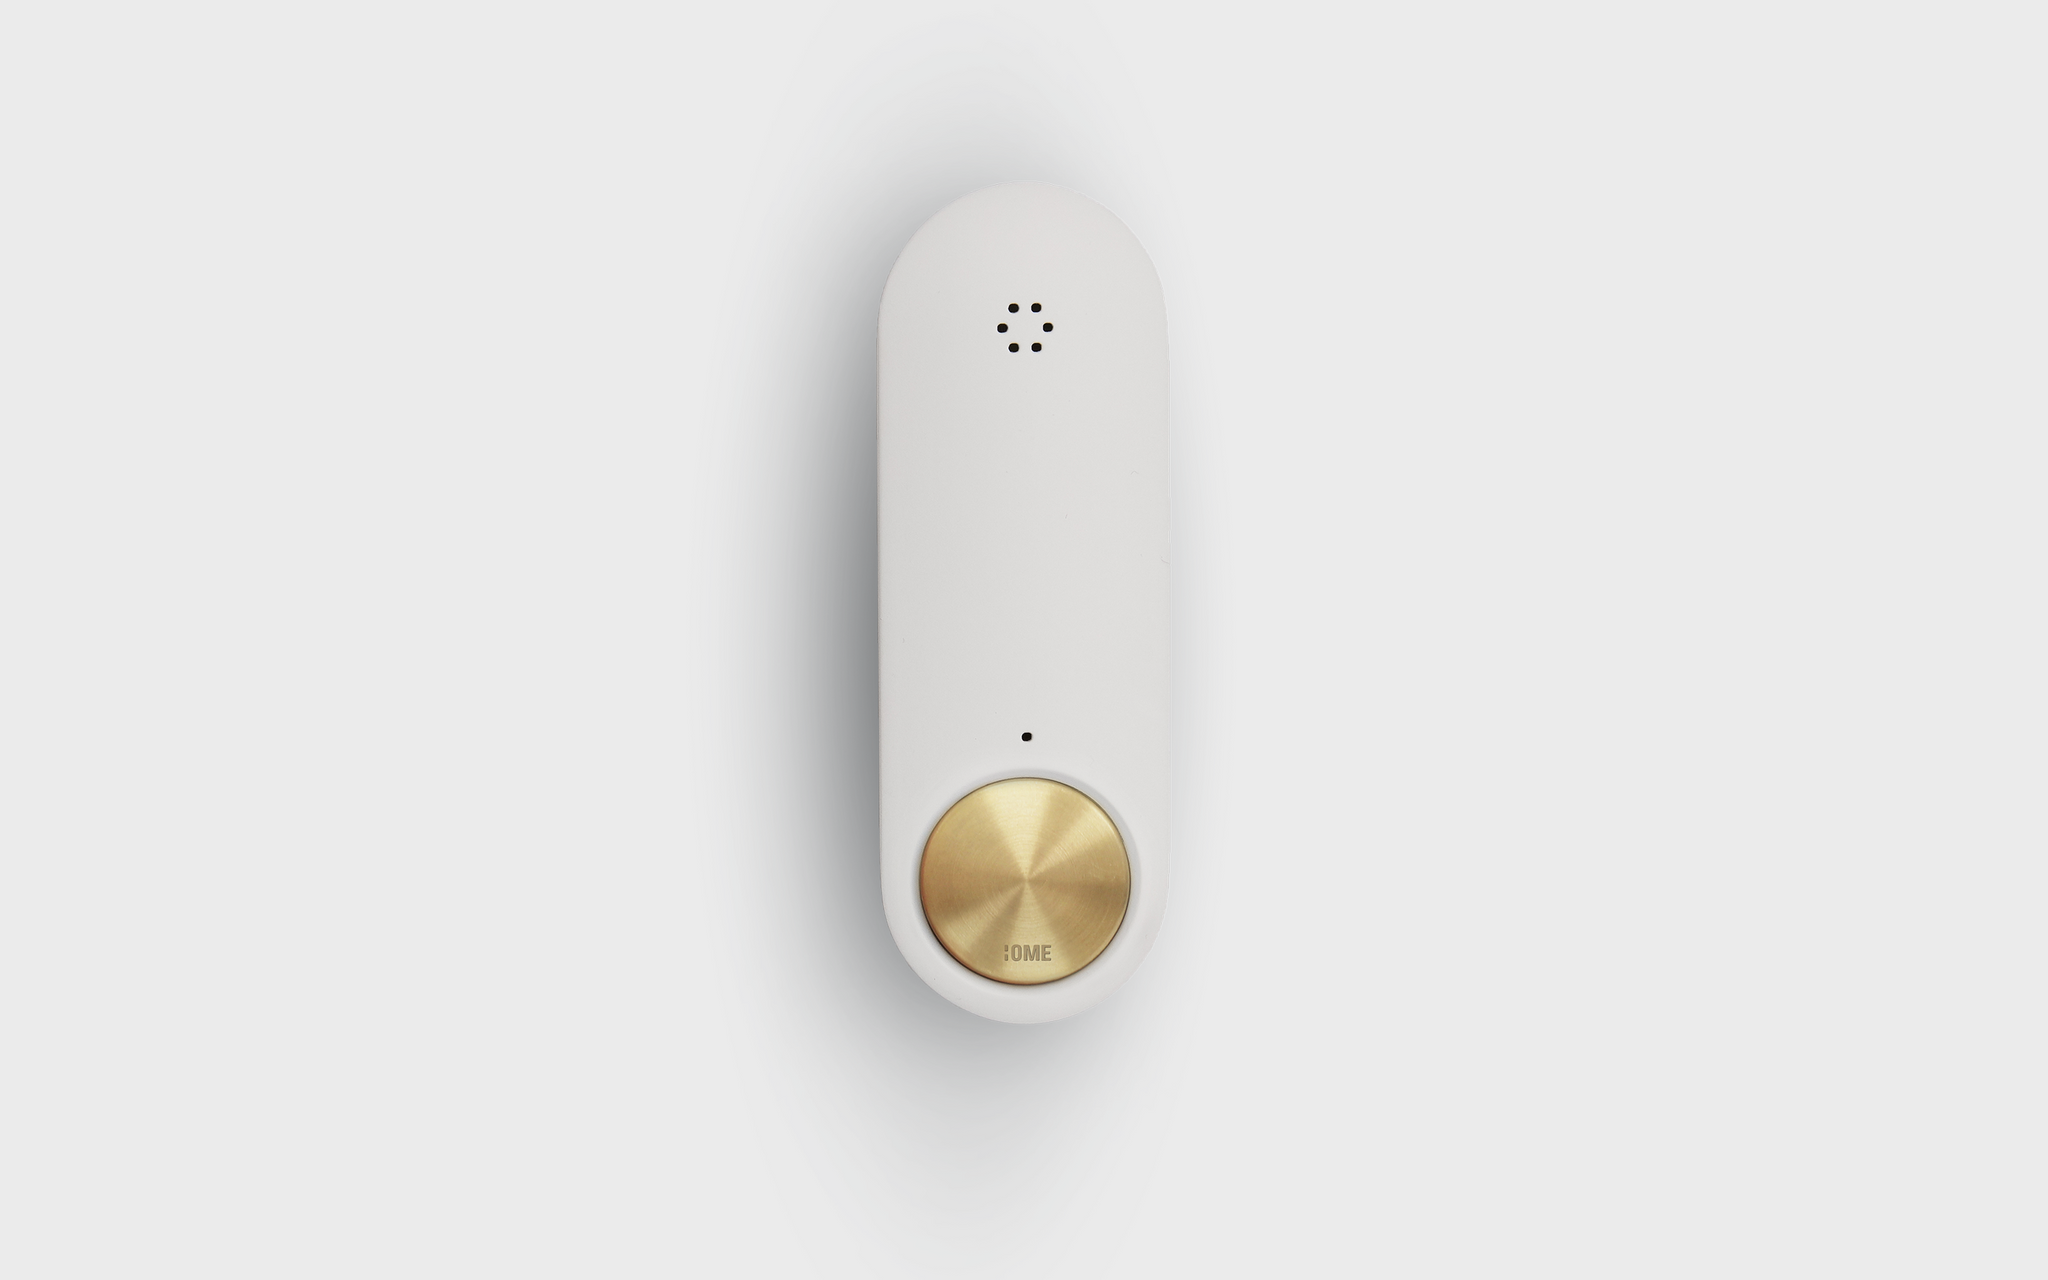 Ome Smart Doorbell in Brass